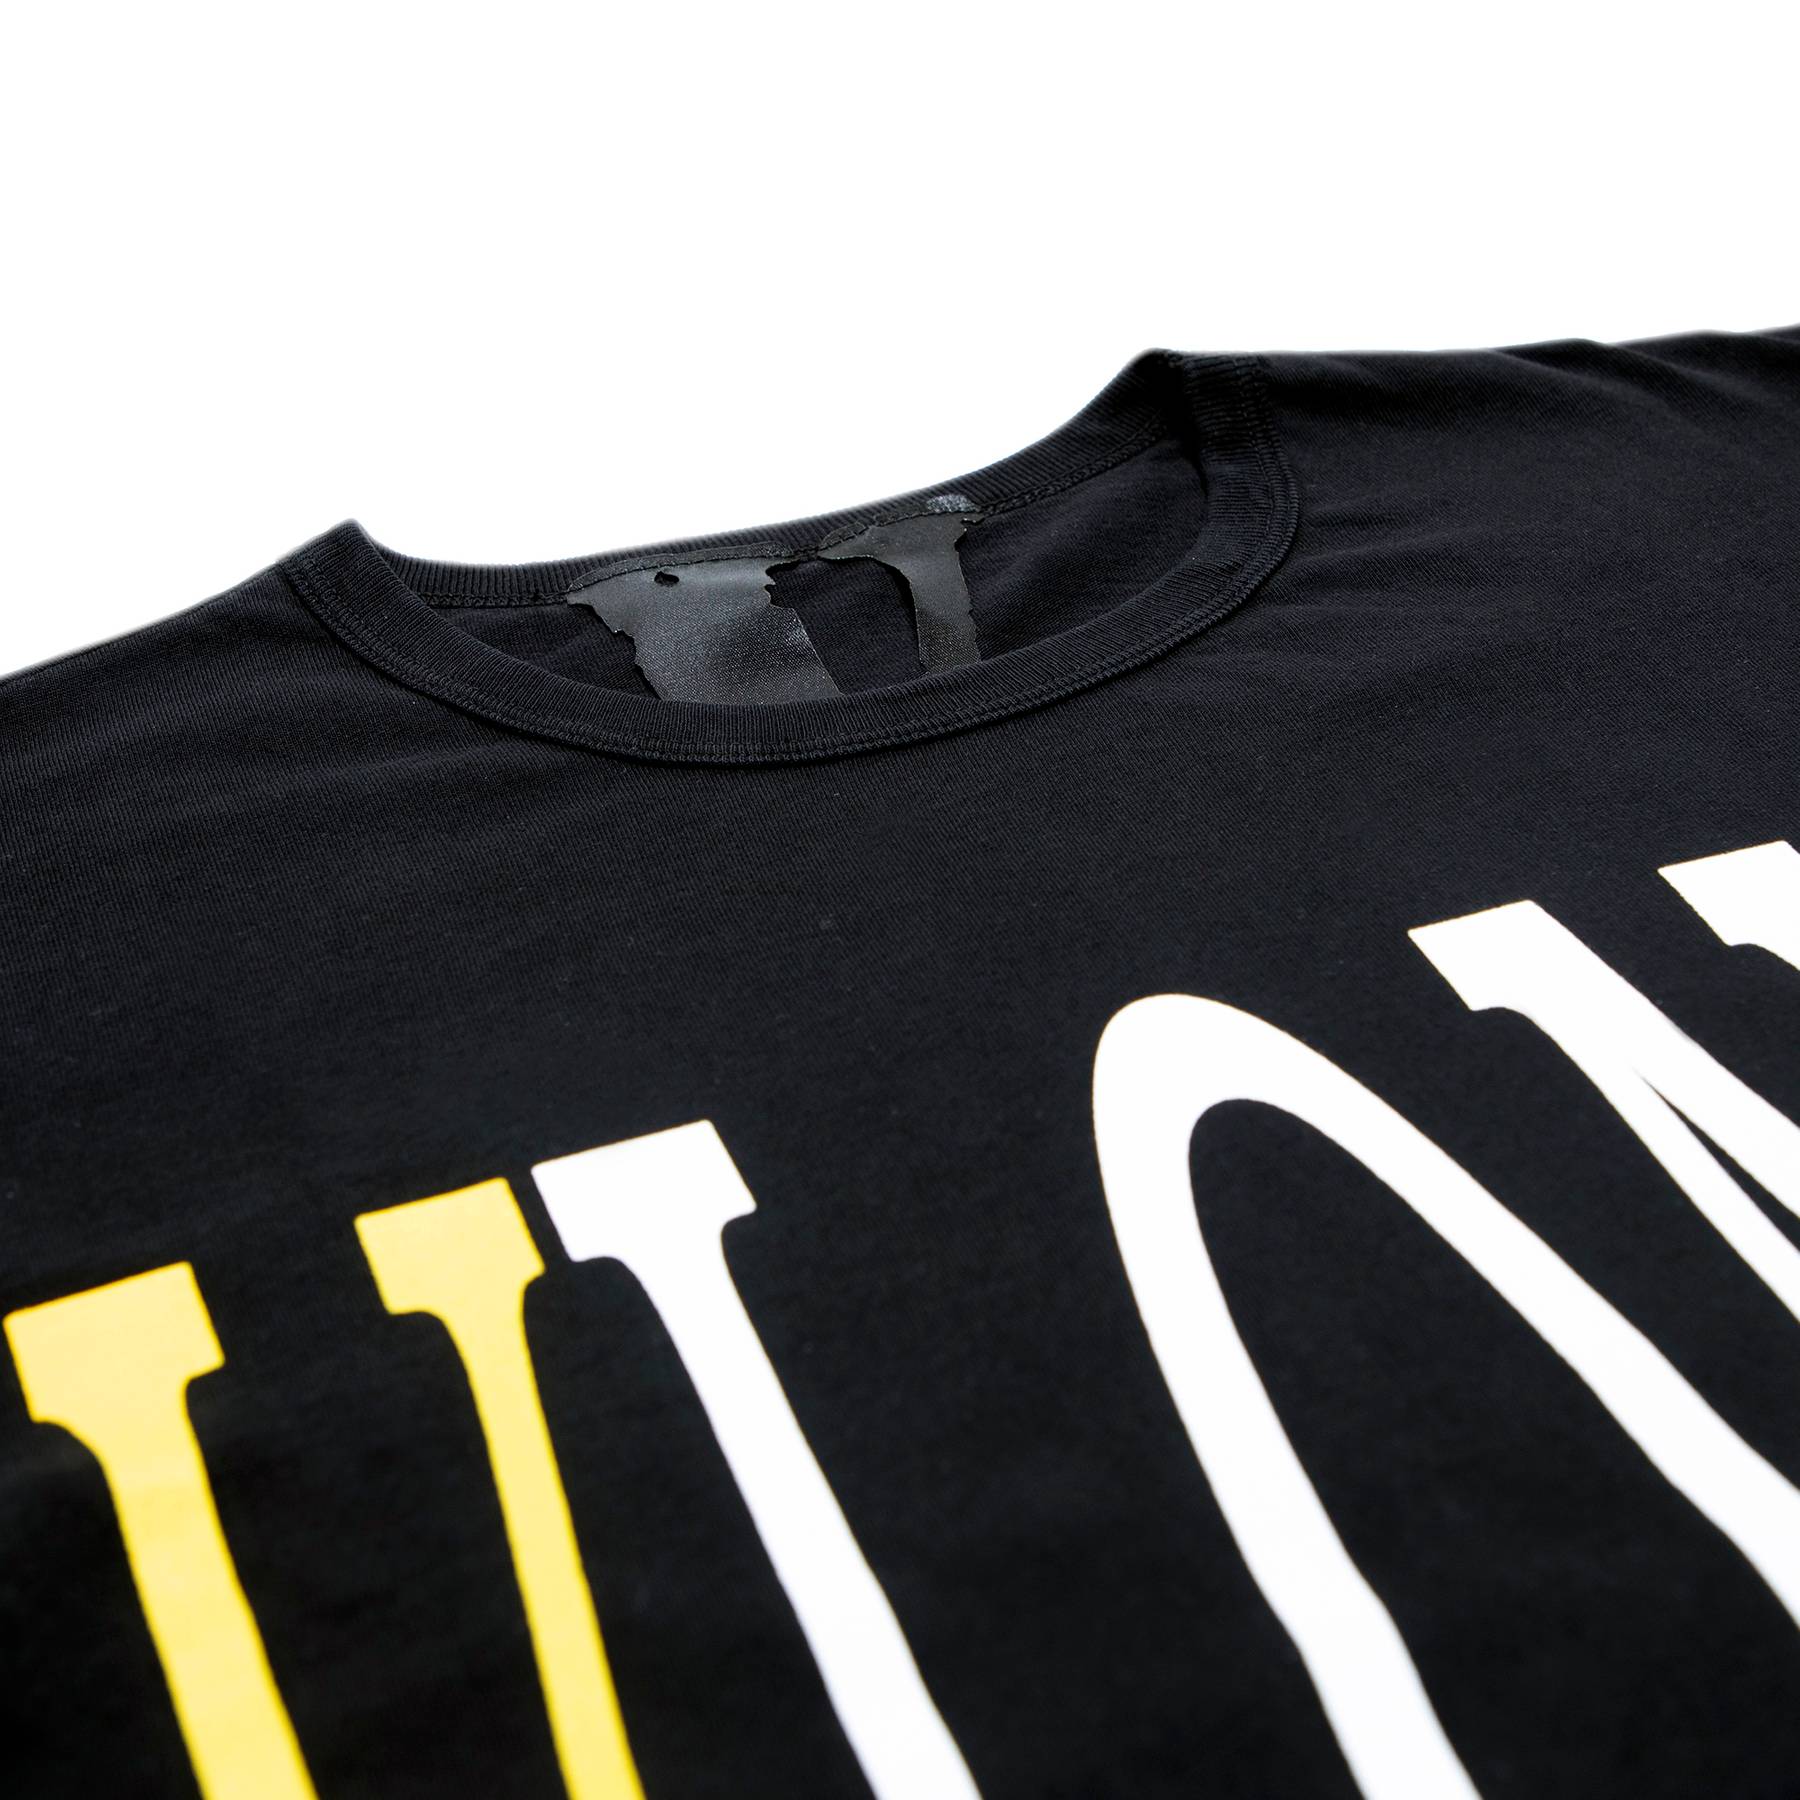 Vlone Staple T-Shirt 'Black/Yellow' - Vlone - 1020 100000103STS YELL | GOAT